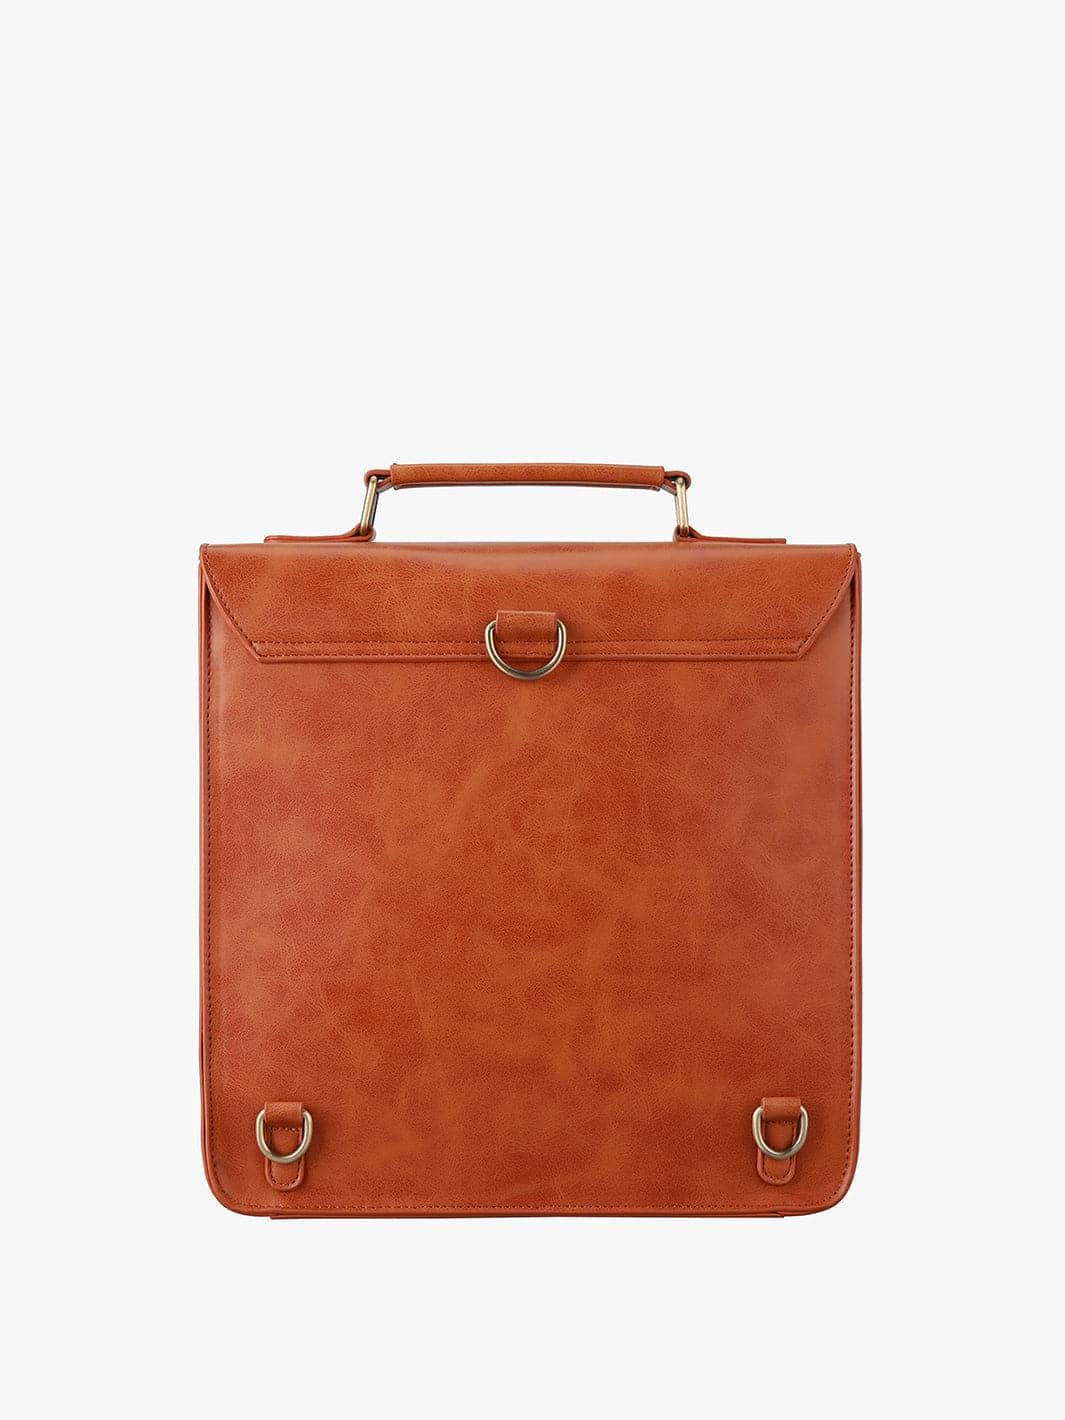 Backpack, But Make it Vintage [Ecosusi]